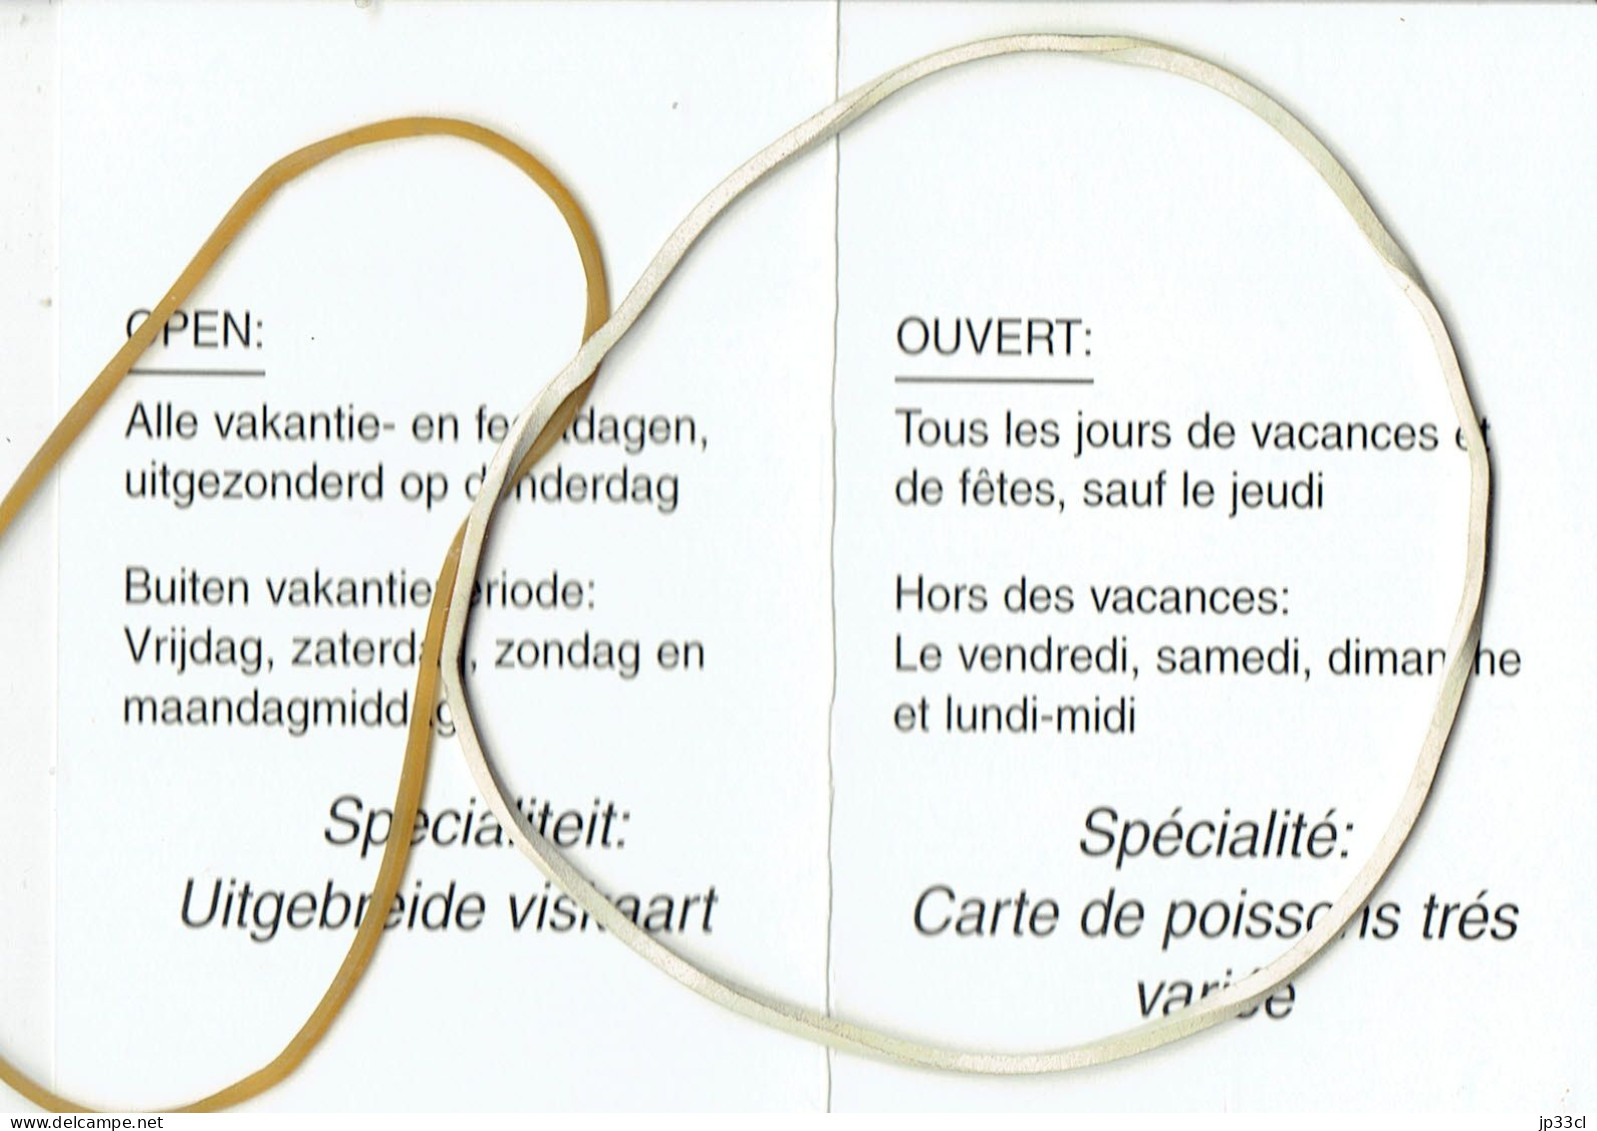 Ancienne Carte Du Restaurant 't Keukentje (Georges & Rosette Hudders), Nieuwpoort (Nieuport) - Toeristische Brochures